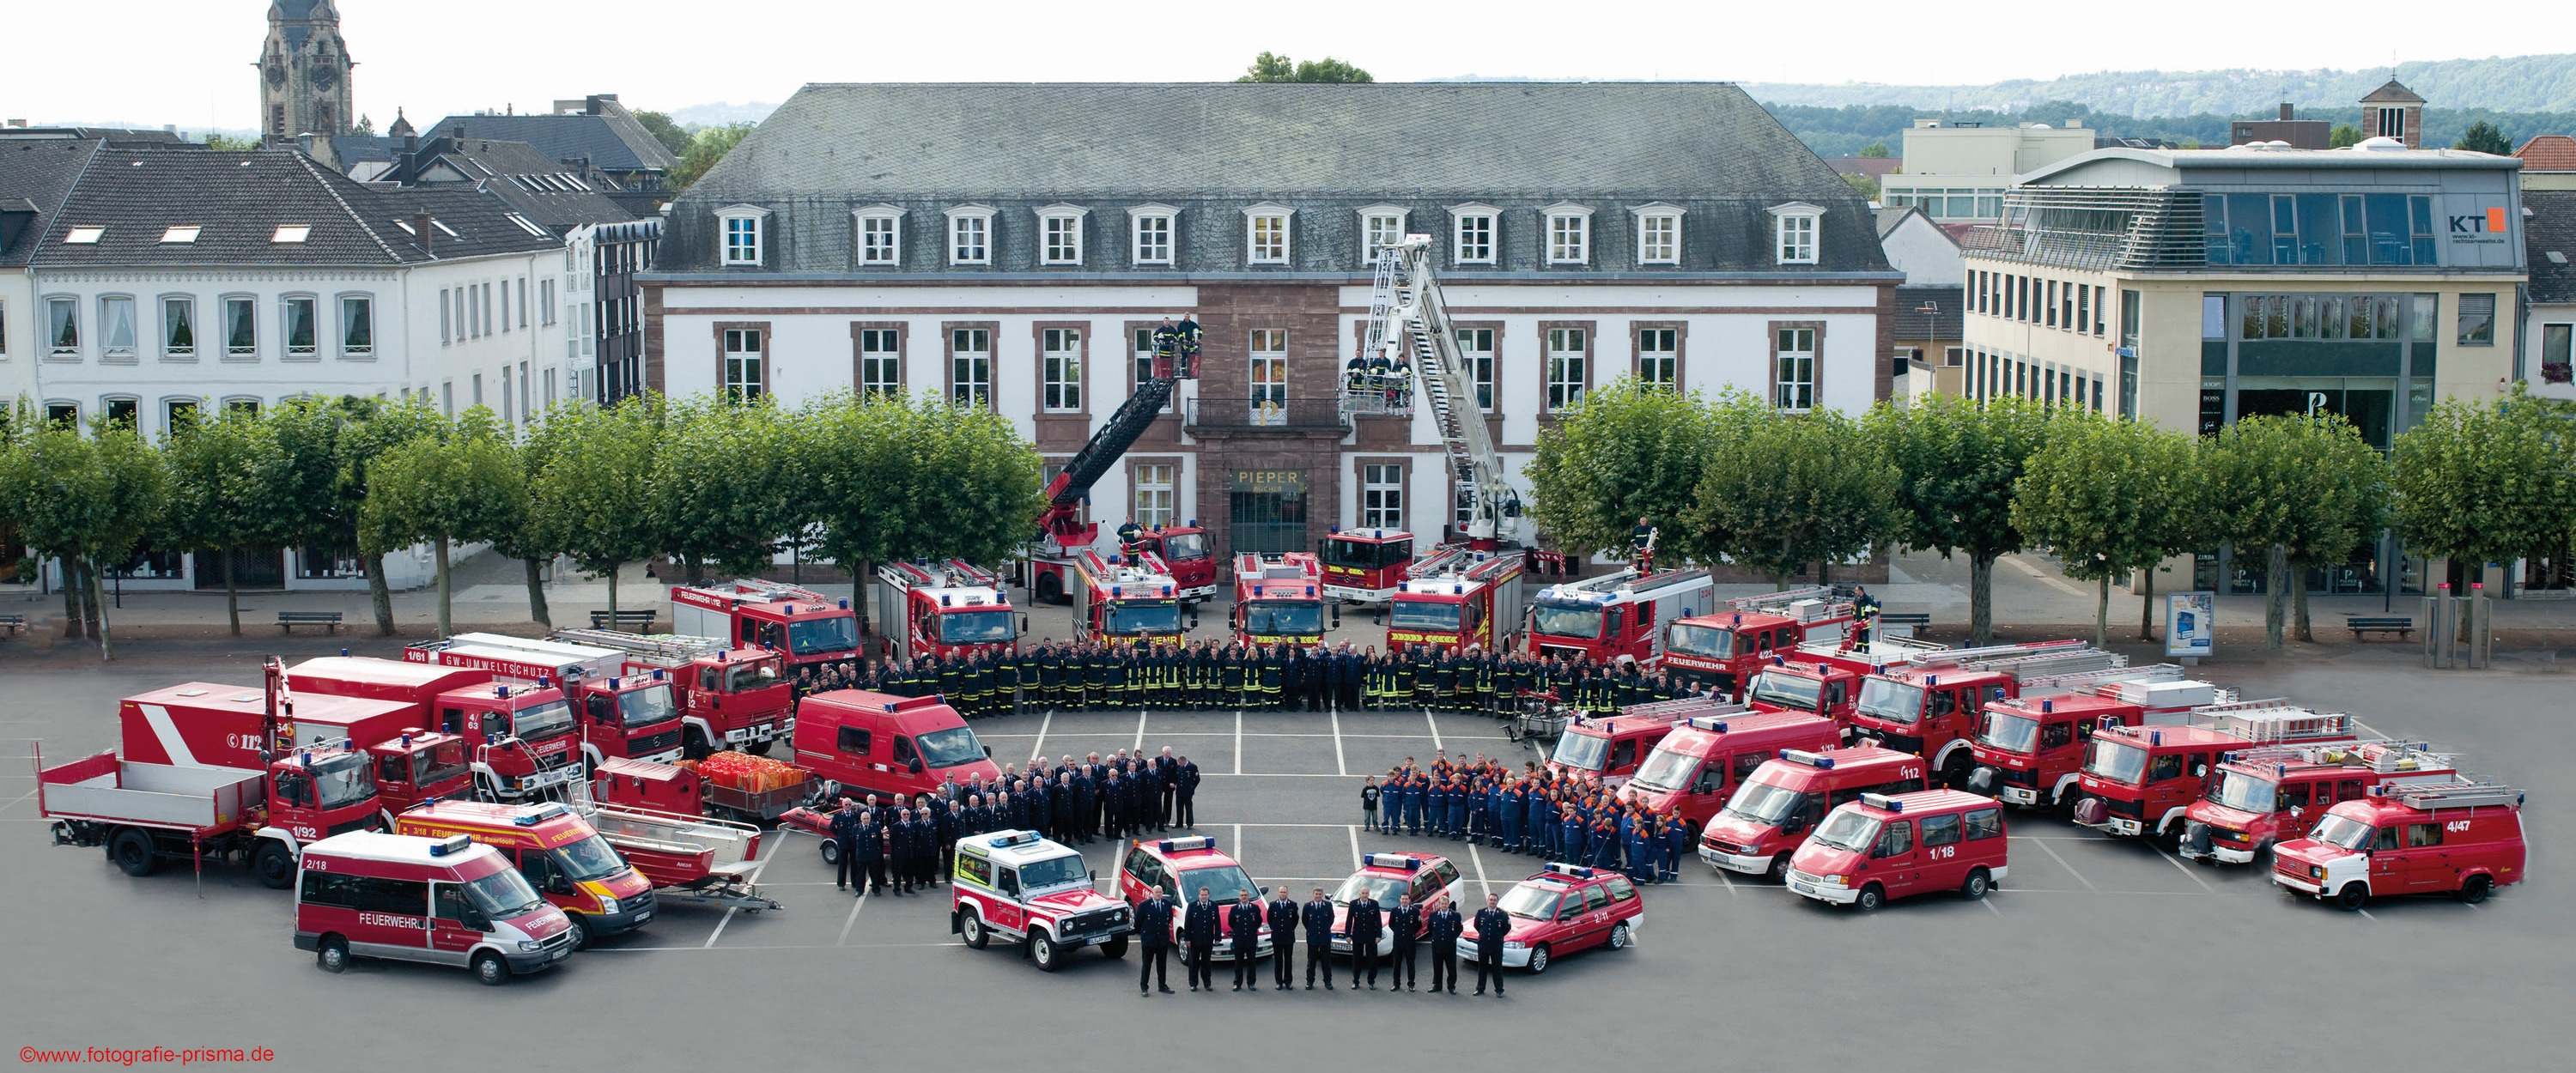 Gruppenfoto der Feuerwehr Saarlouis zum 200-jährigen Jubiläum auf dem Großen Markt